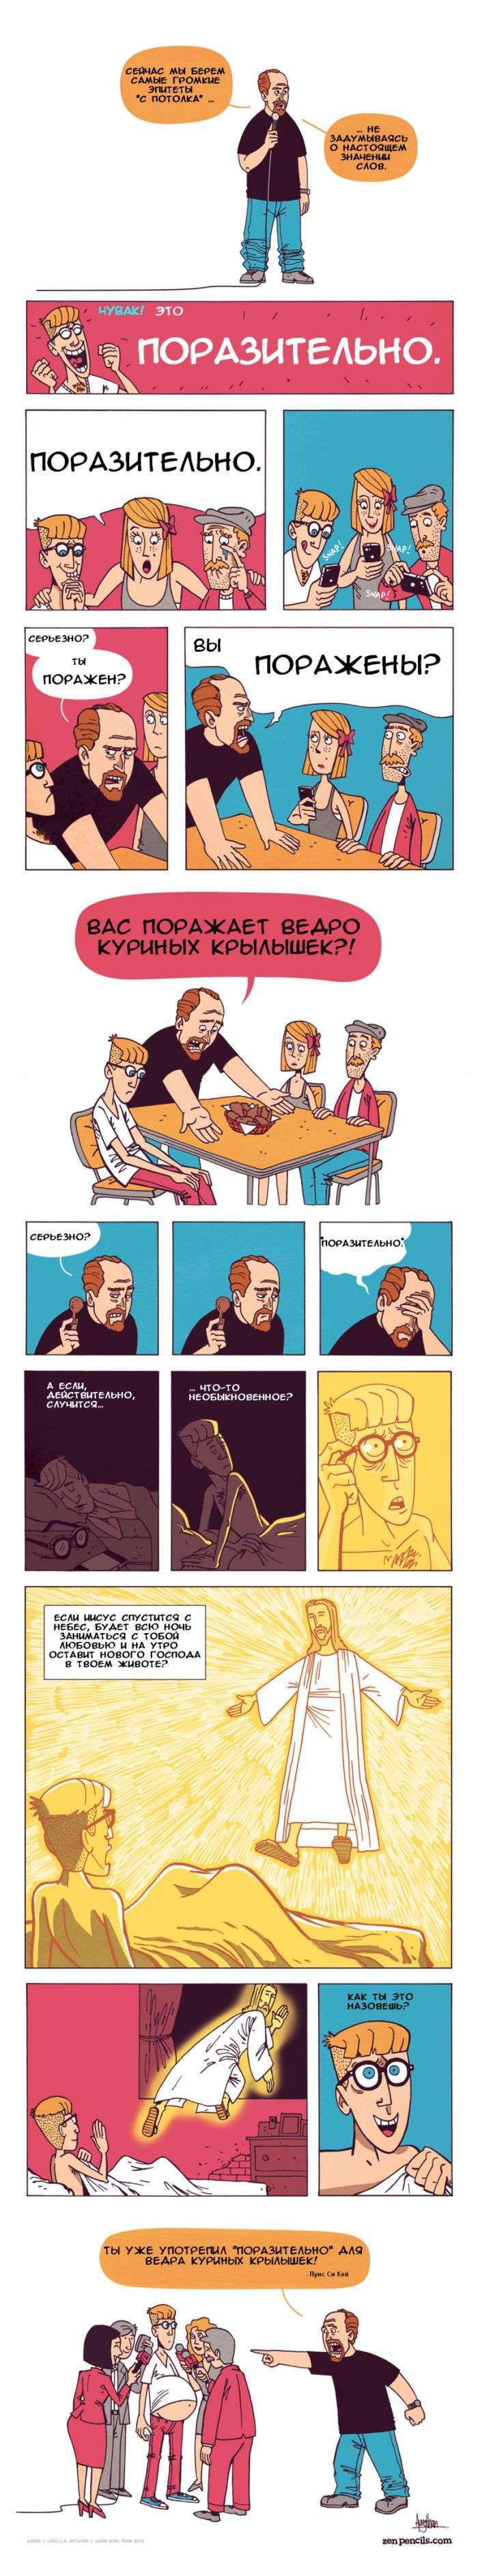 Філософські комікси (19 картинок)